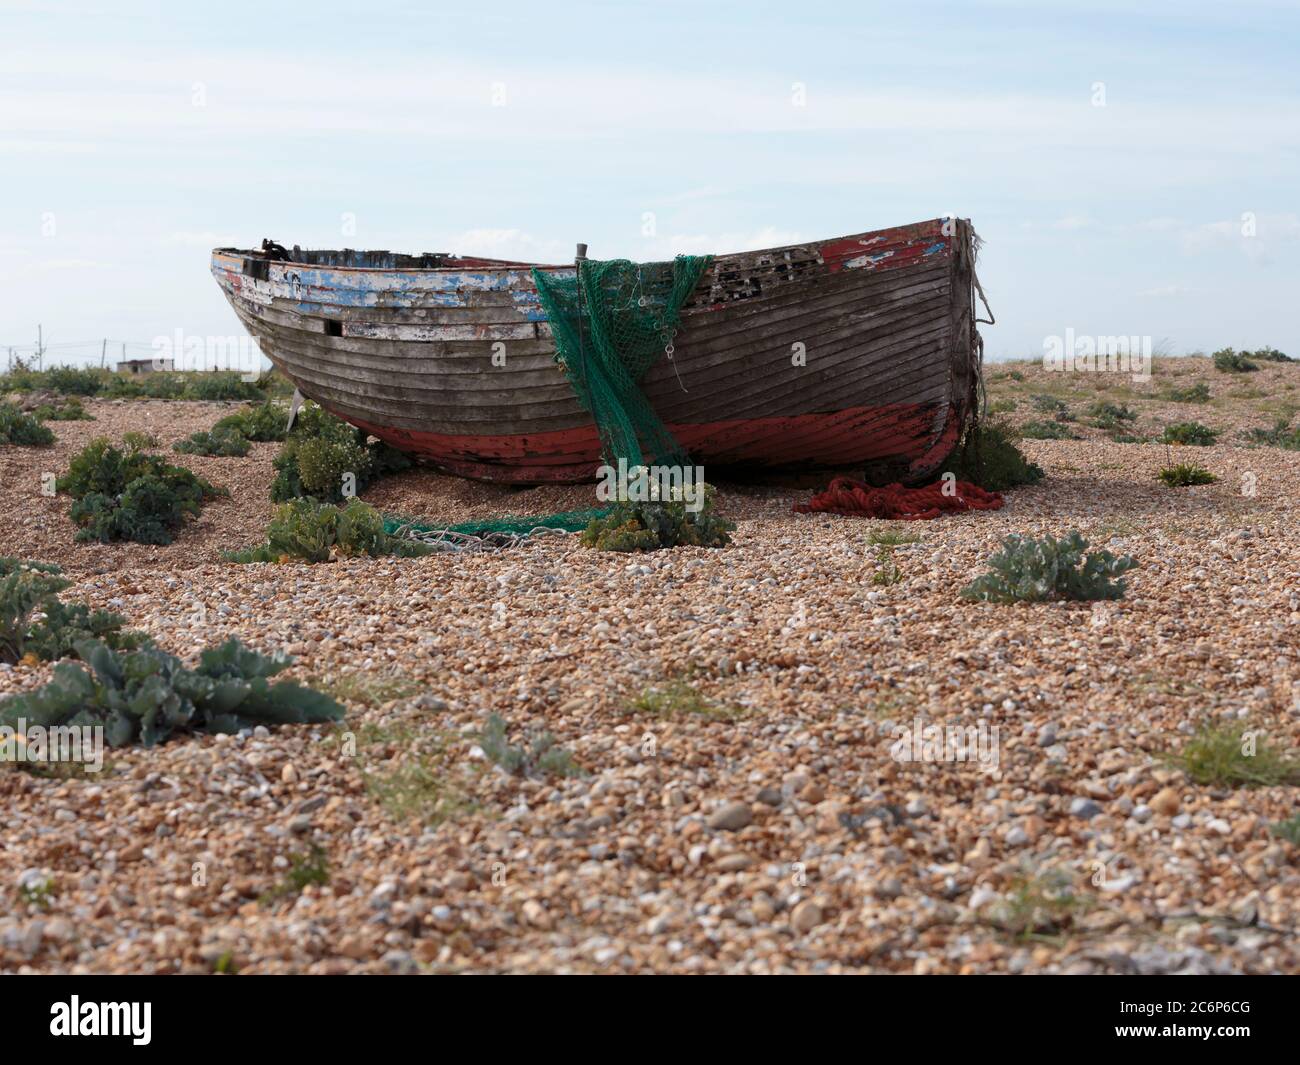 Der Rumpf eines verlassenen Fischerbootes am Dungeness Beach, einer Landzunge an der Küste von Kent, England, bildete weitgehend einen Kiesstrand. Stockfoto